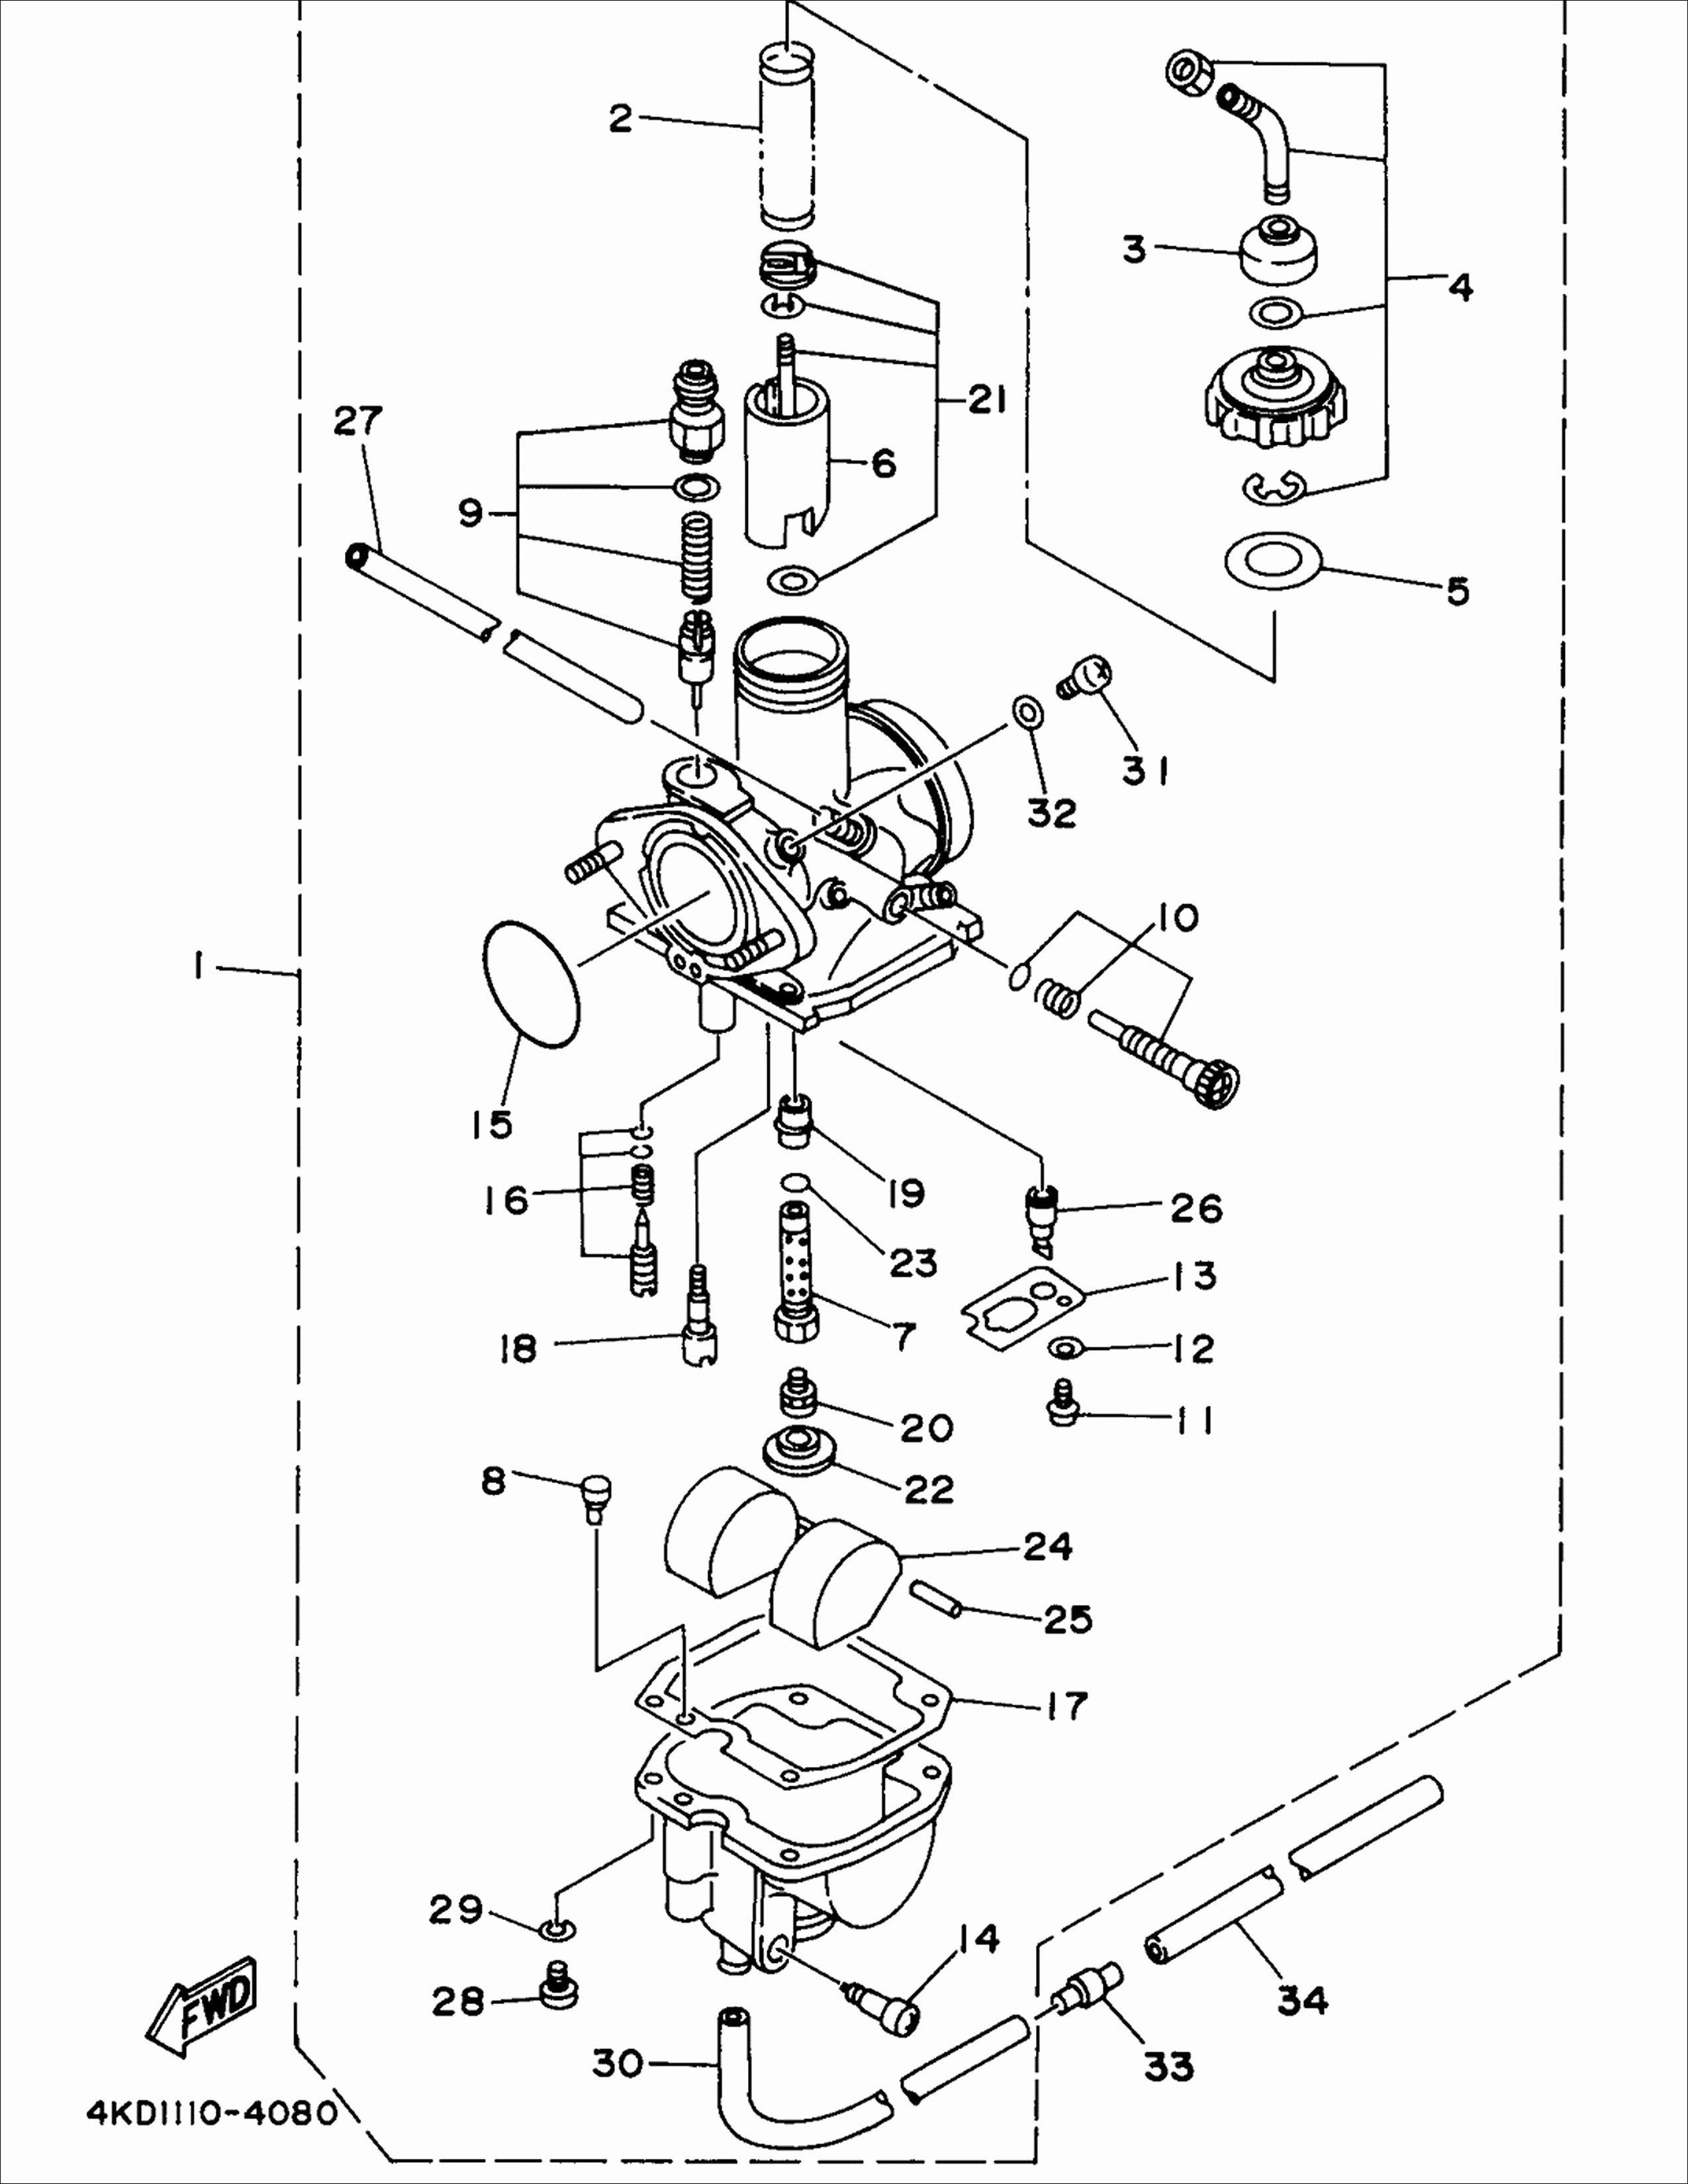 2006 Mini Cooper Engine Diagram Jeep Mander Engine Diagram Automotive Wiring Diagrams Of 2006 Mini Cooper Engine Diagram